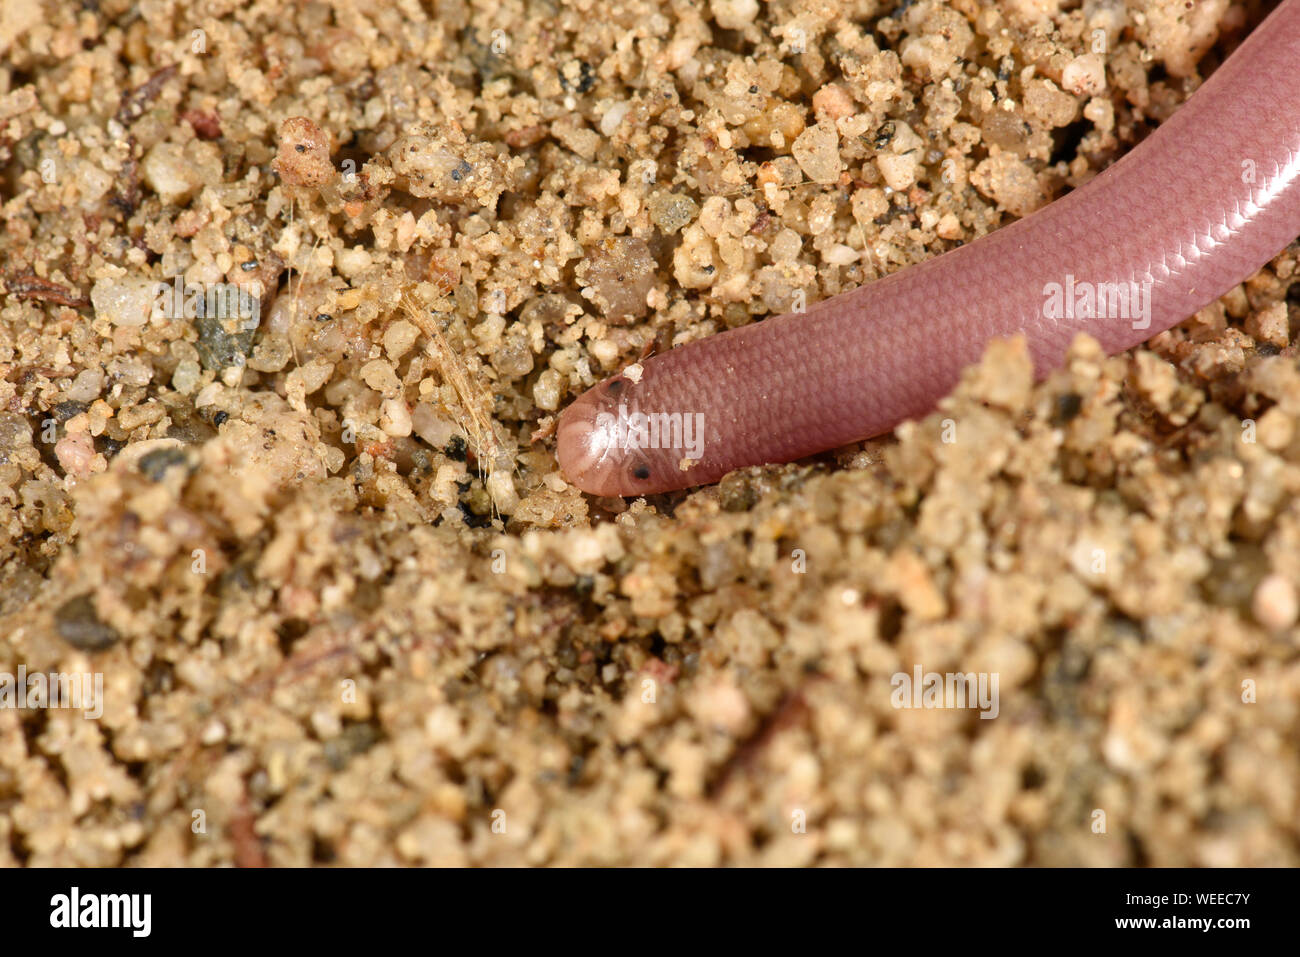 Europäische Wurm oder blinde Schlange (Xerotyphlops vermicularis) Close-up Kopfende mit lichtempfindlichen eyespots, Bulgarien, April Stockfoto